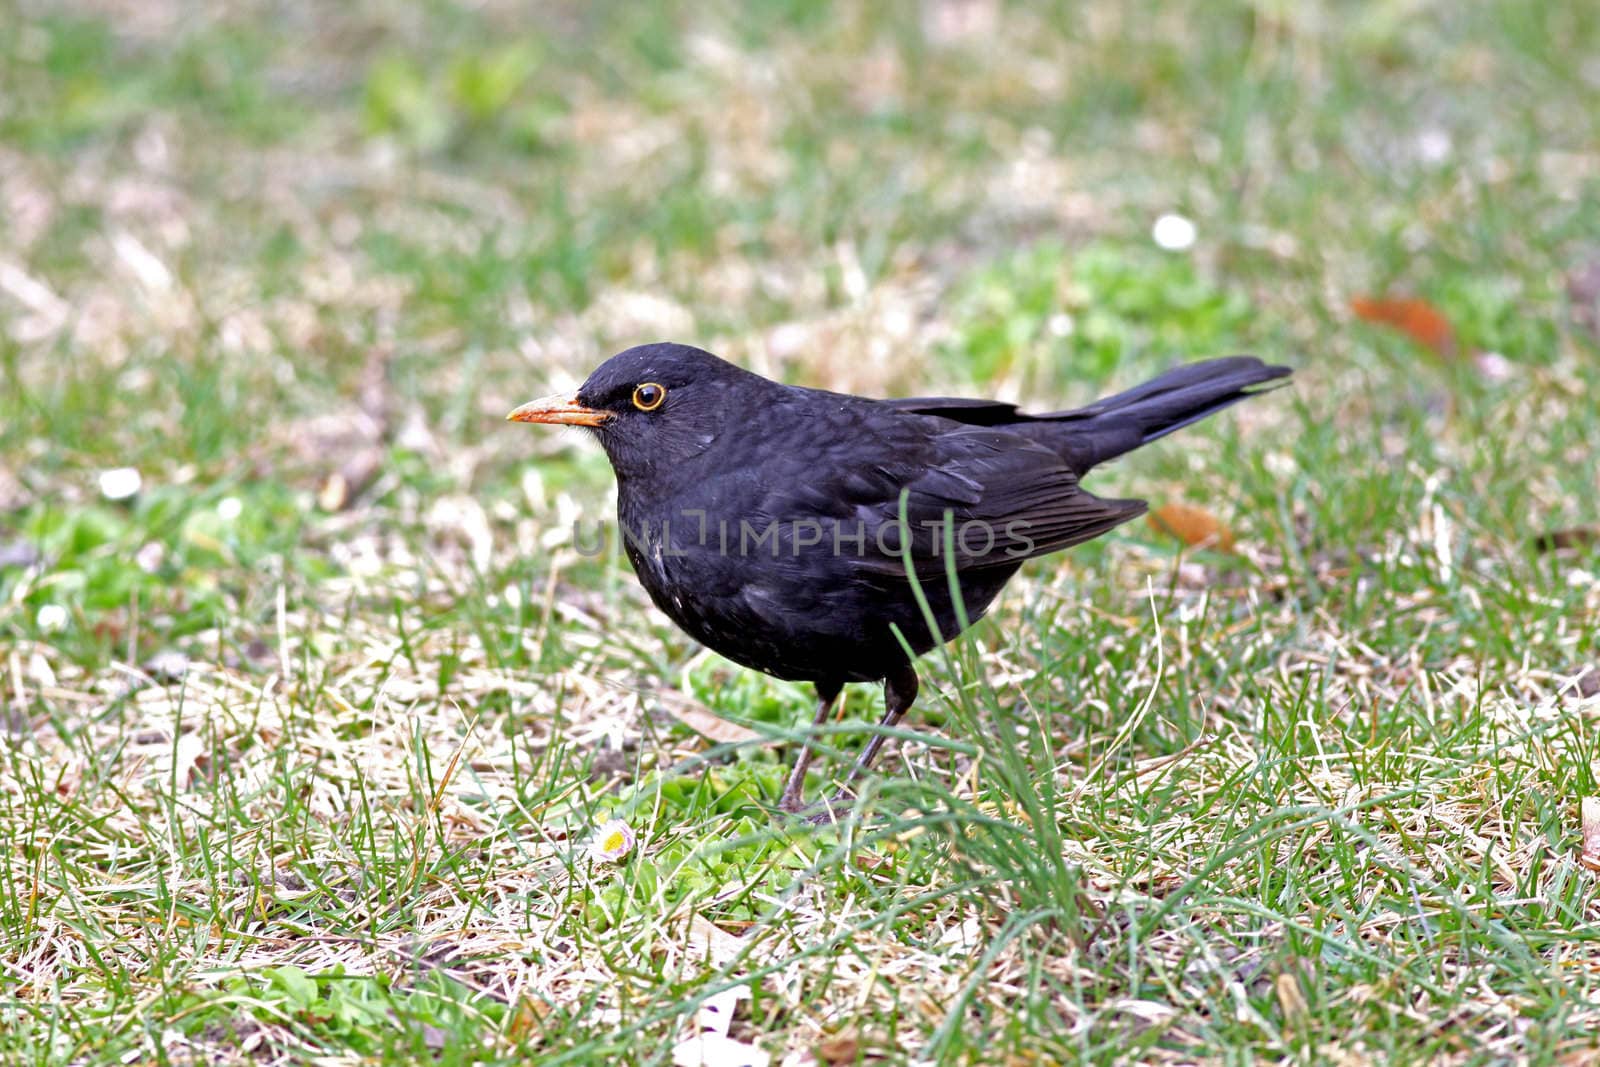 Blackbird by monner